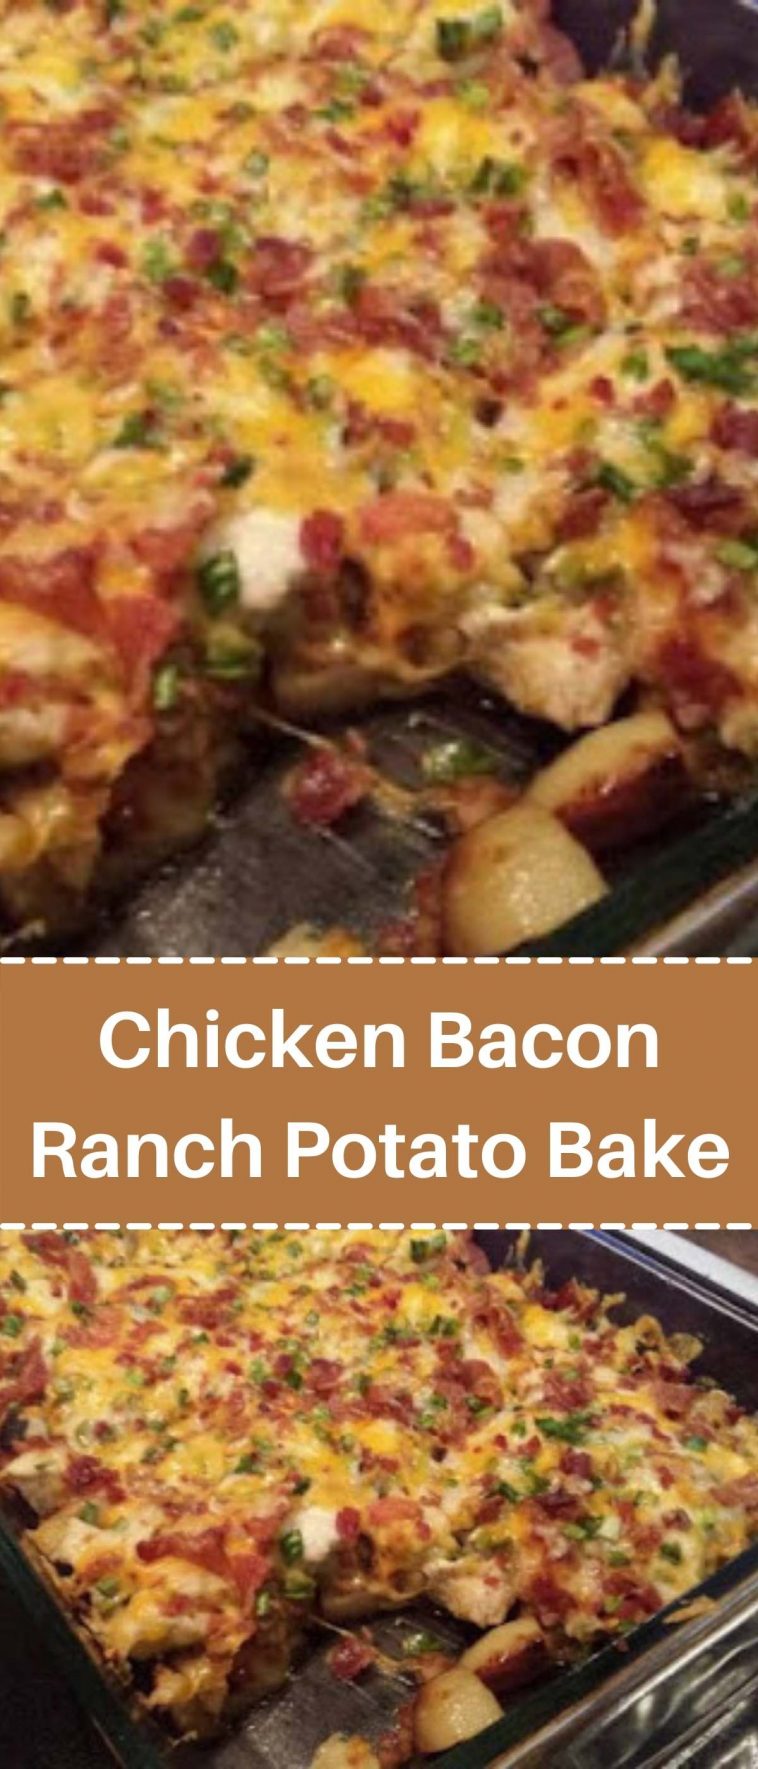 Chicken Bacon Ranch Potato Bake